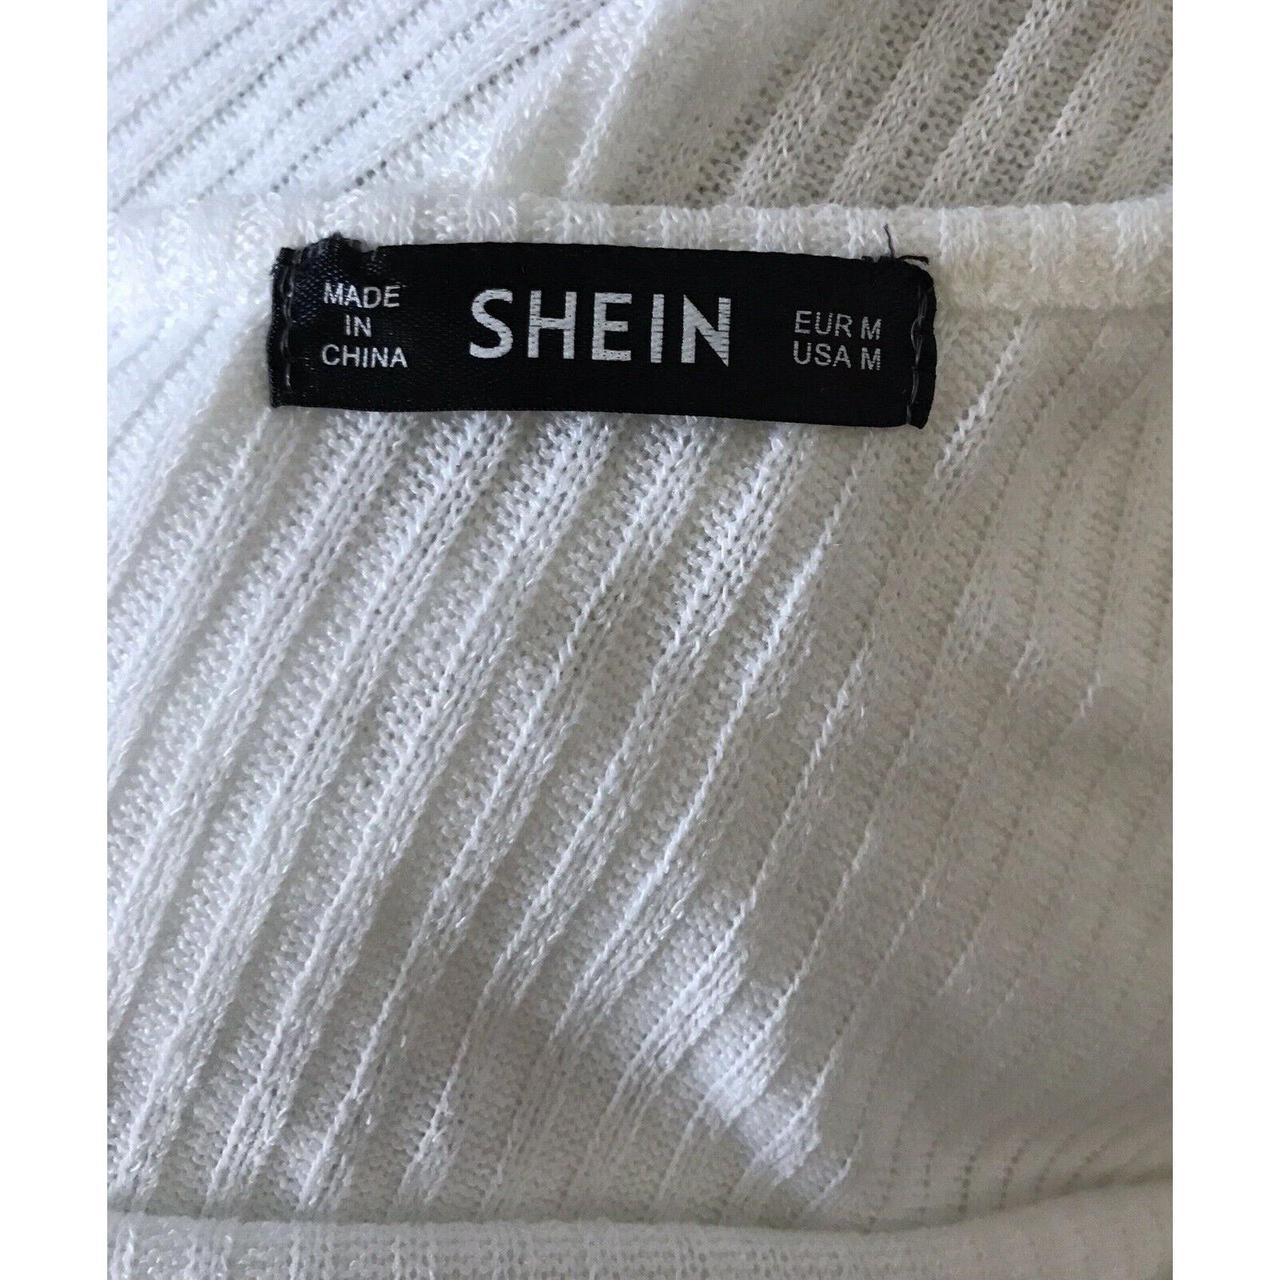 Product Image 4 - SHEIN Womens Size Medium White